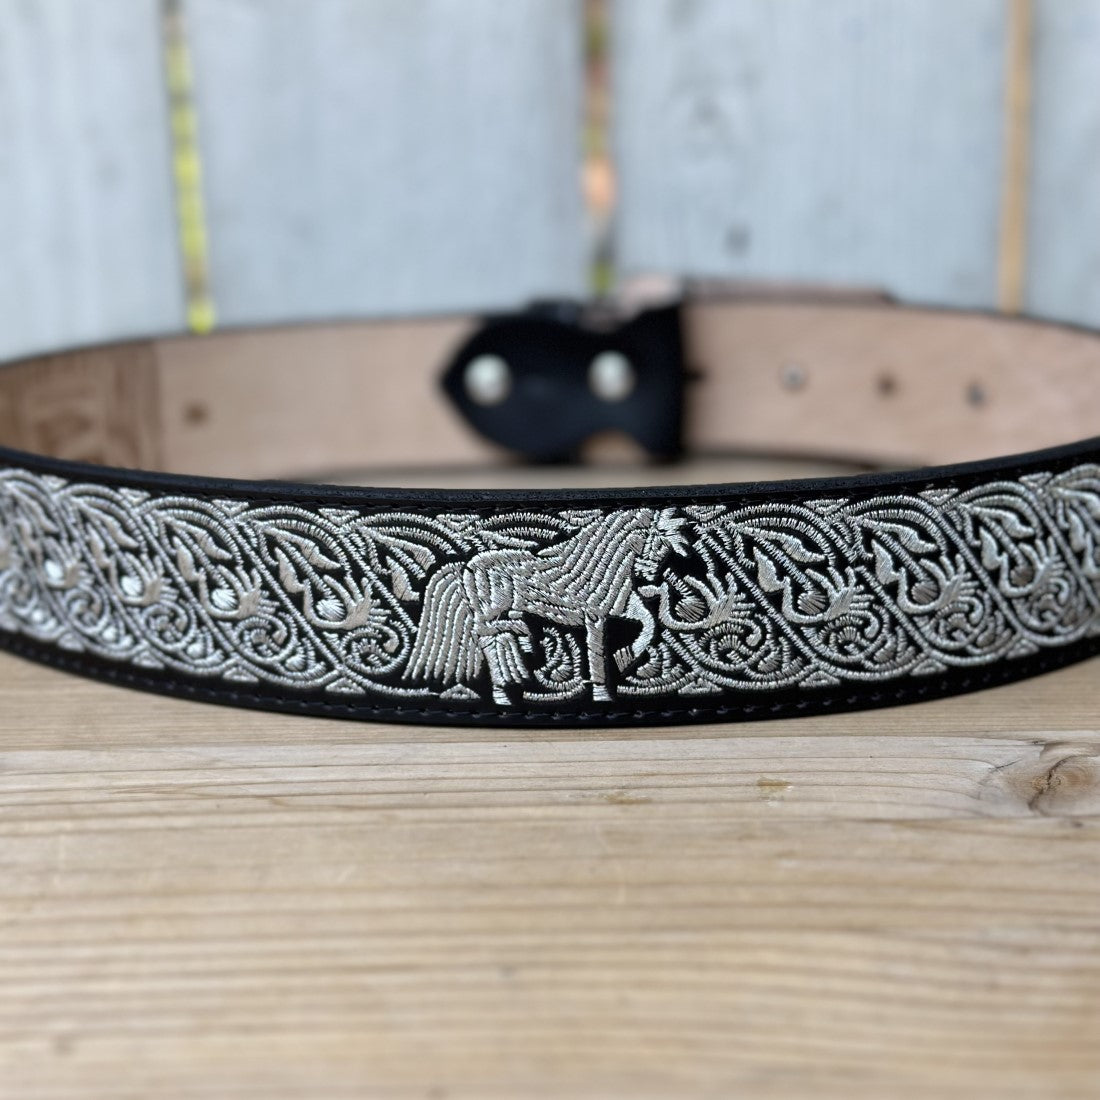 Cinturon Vaquero Negro Caballo Orlas de 2" - Cinturones Vaqueros para Hombre - Cinturones Vaqueros de Mexico